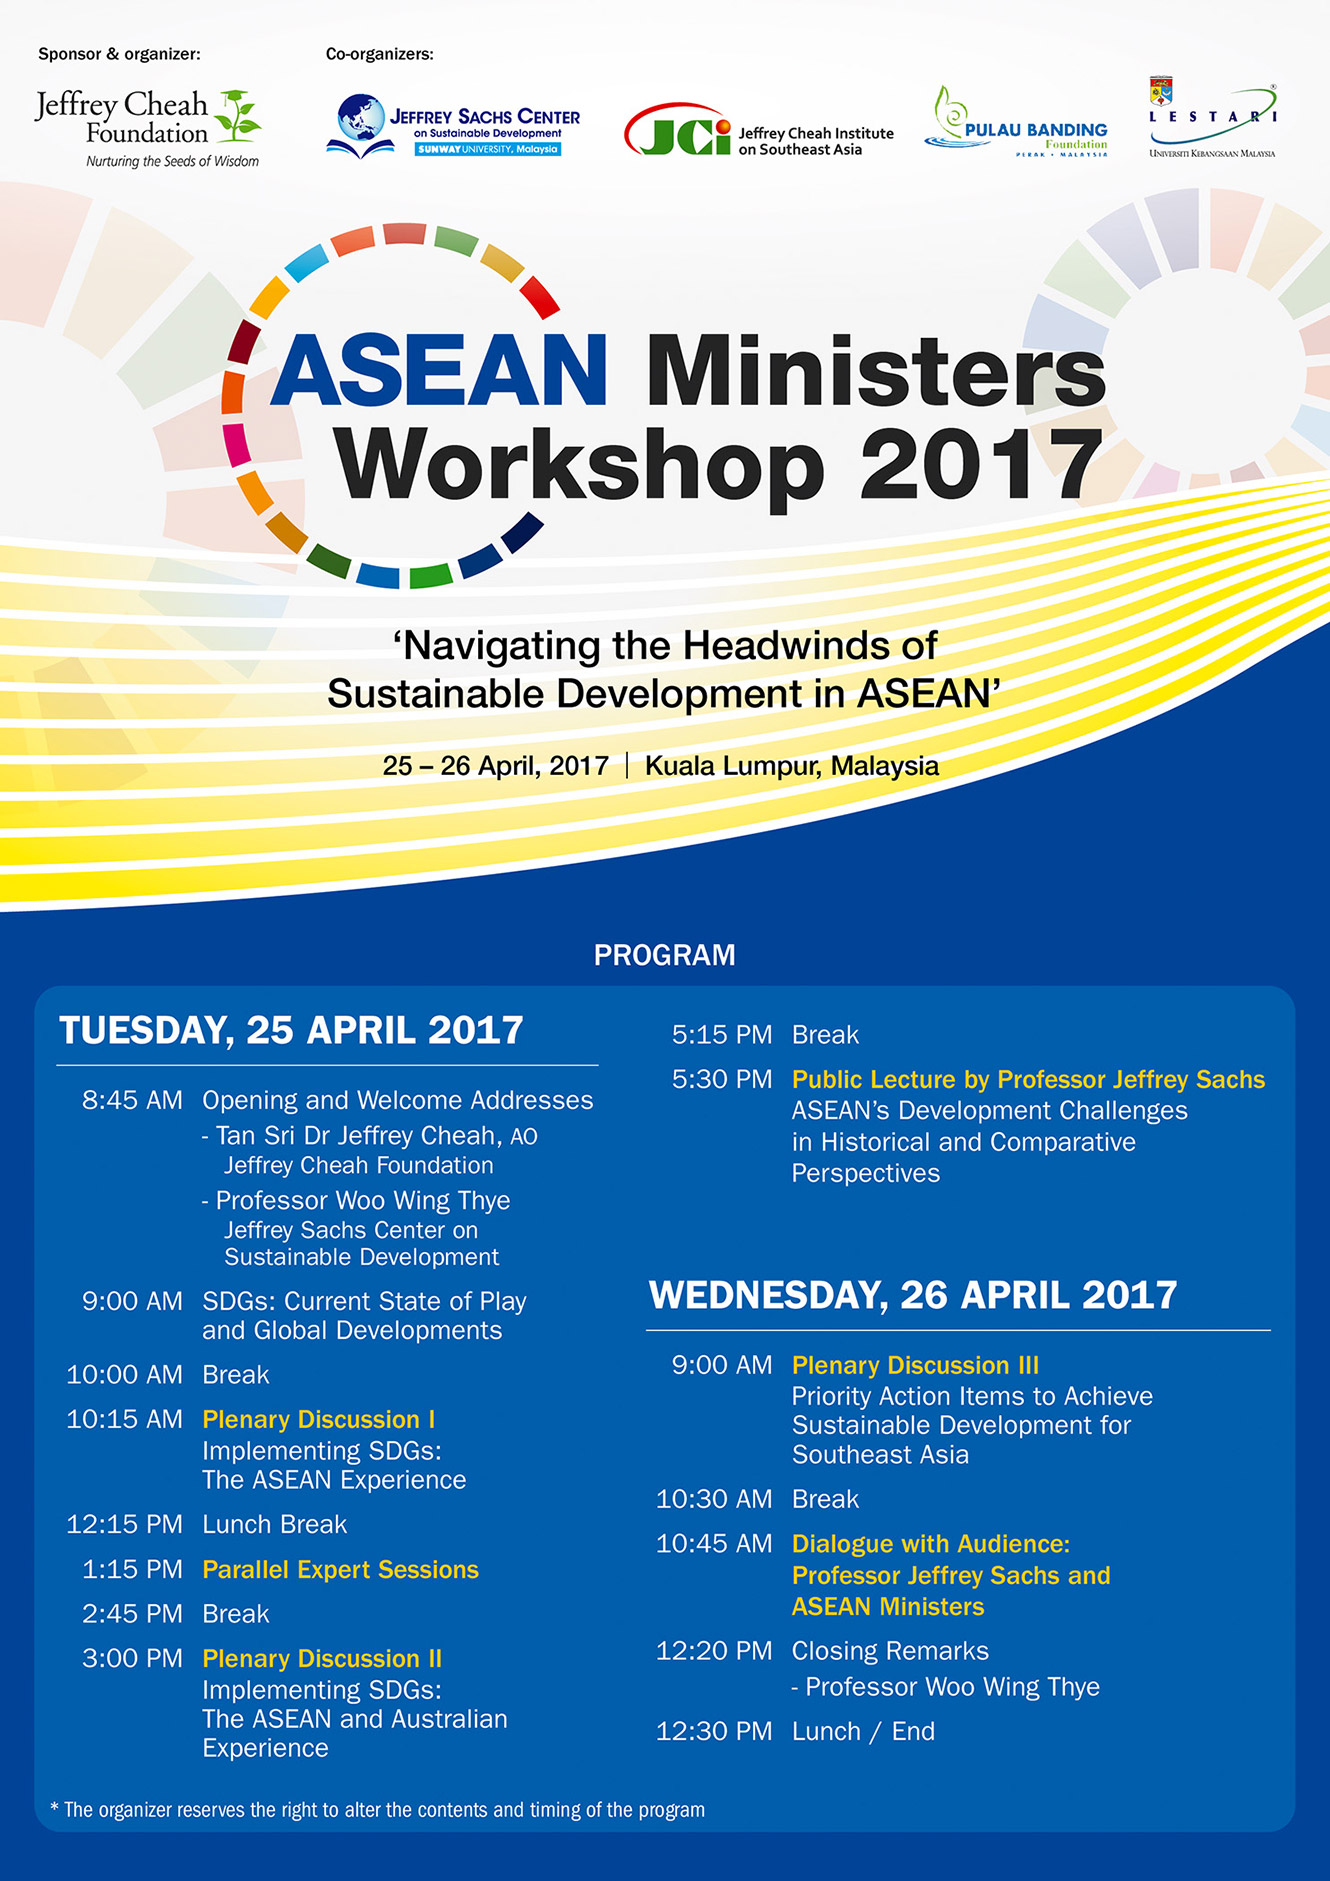 ASEAN Ministers Workshop 2017